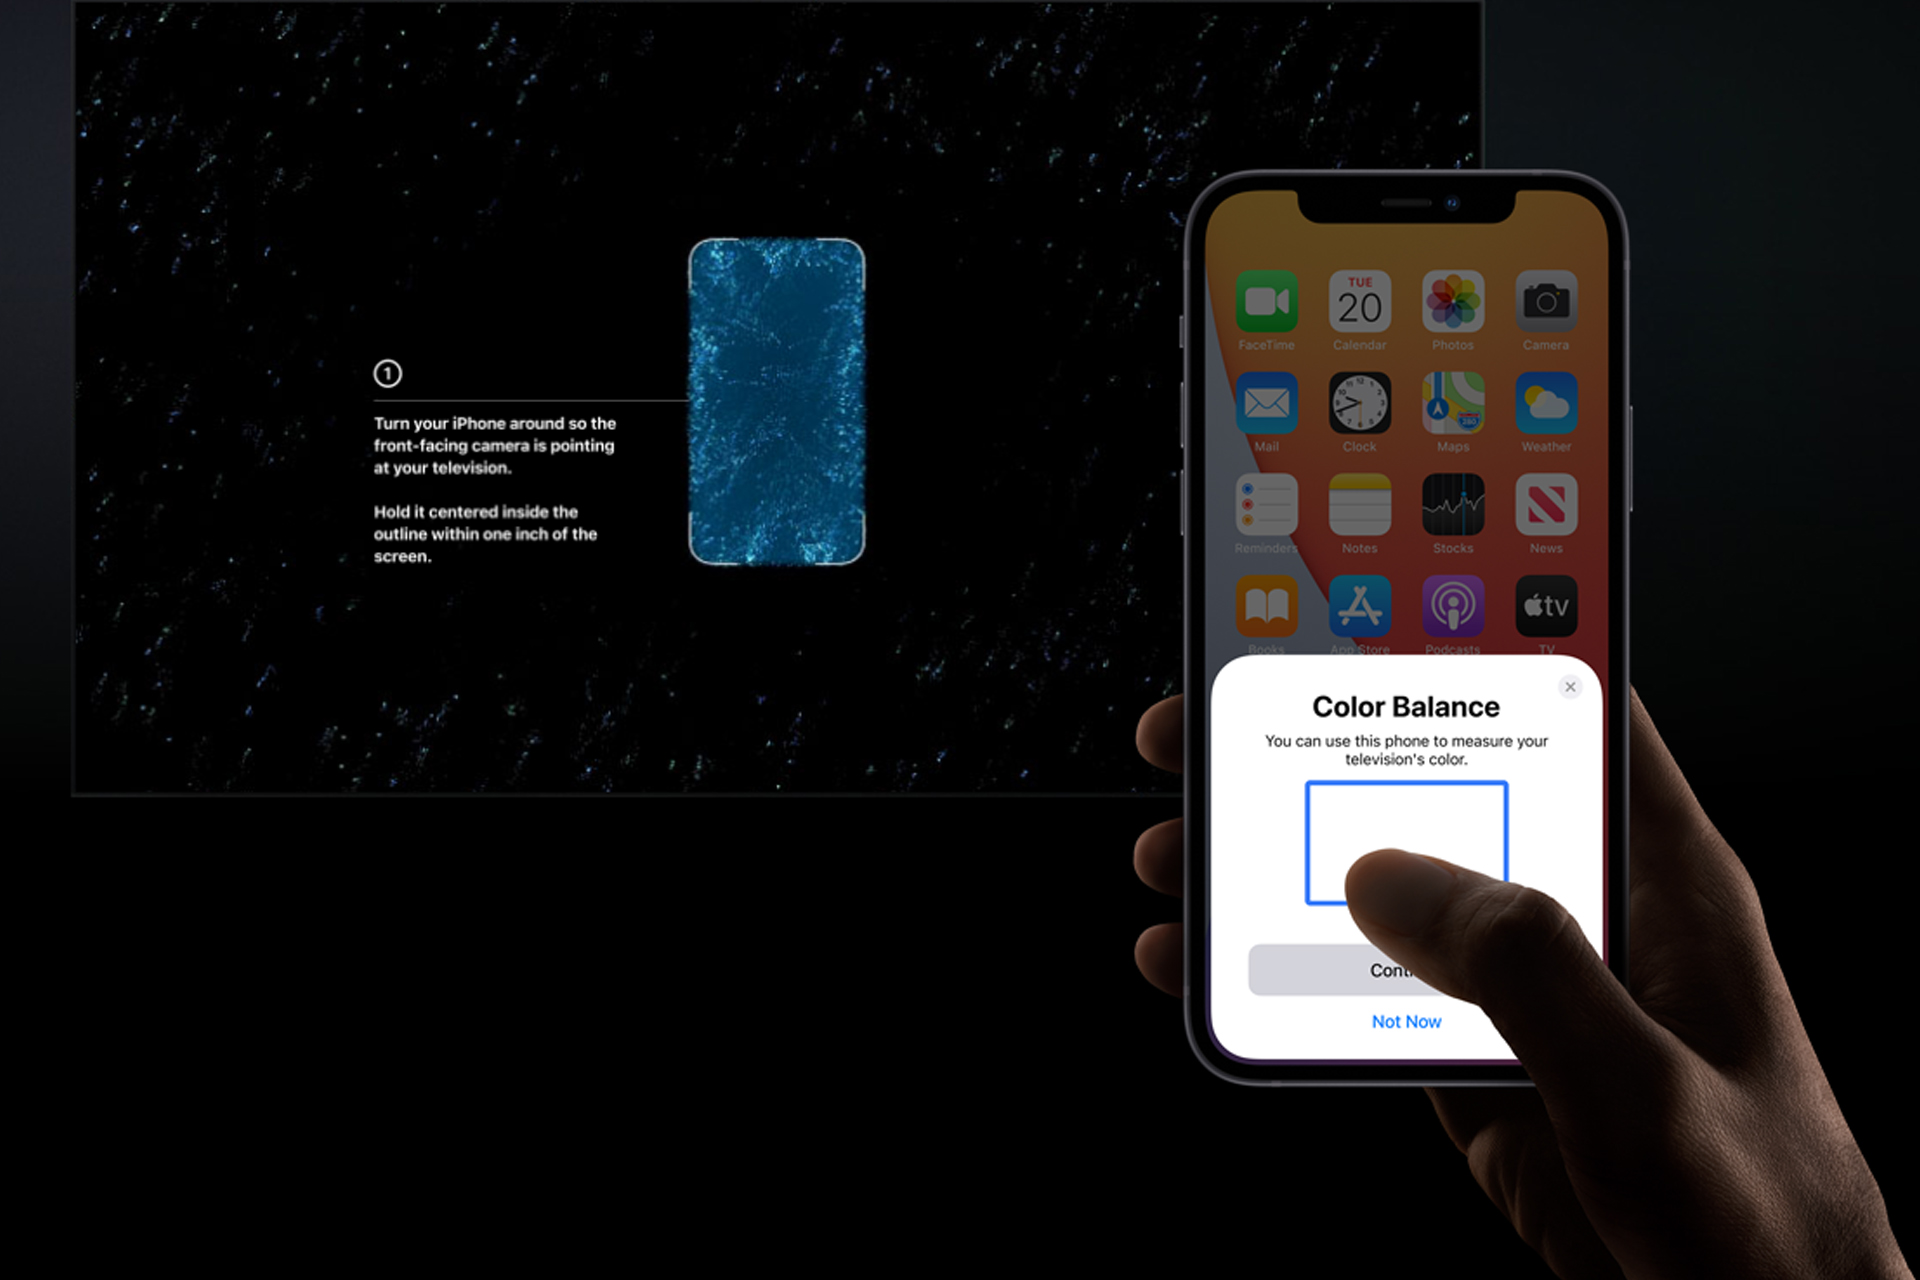 نگاهی به اپل تی وی 4K سال 2021 از نگاه سایت Apple تصویر دوم